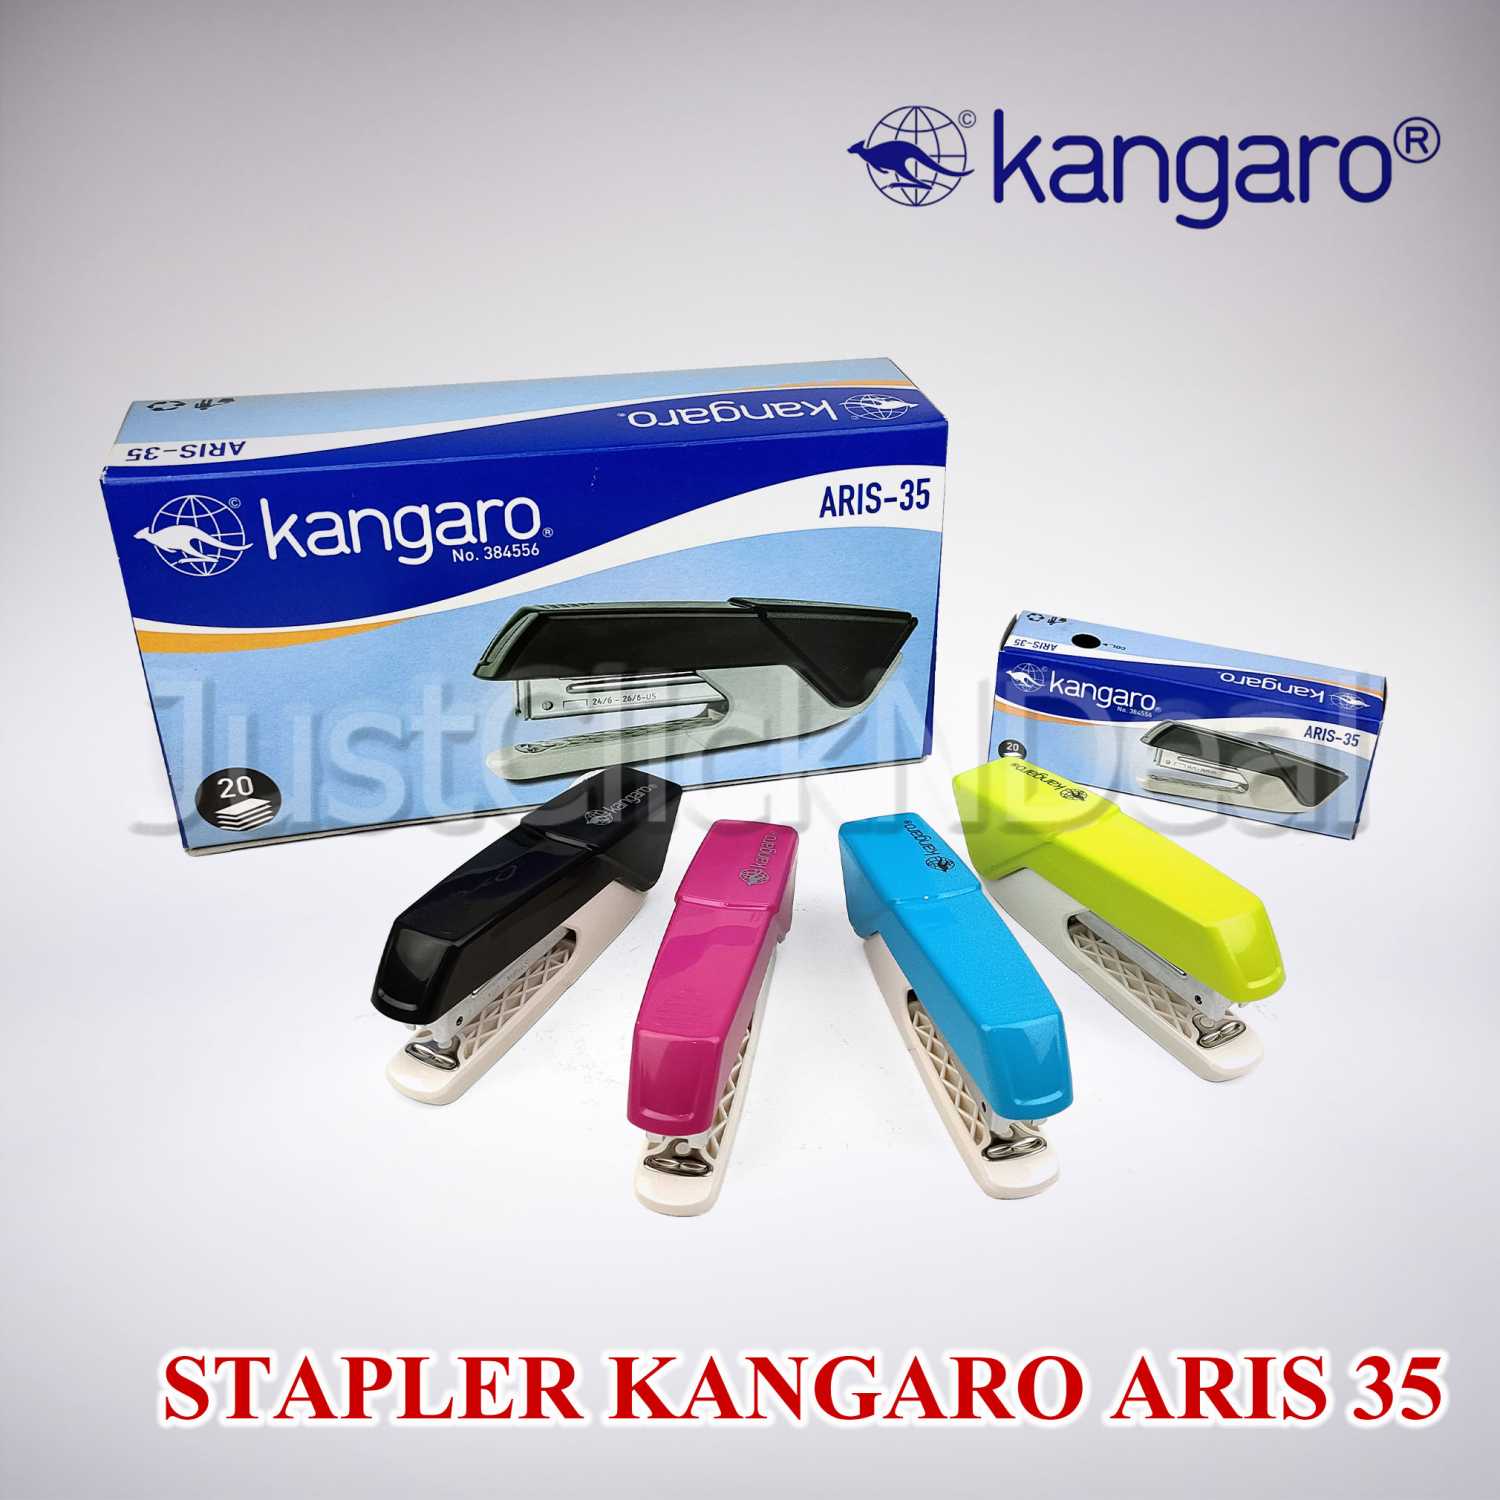 STEPLEER KANGARO ARIS-35